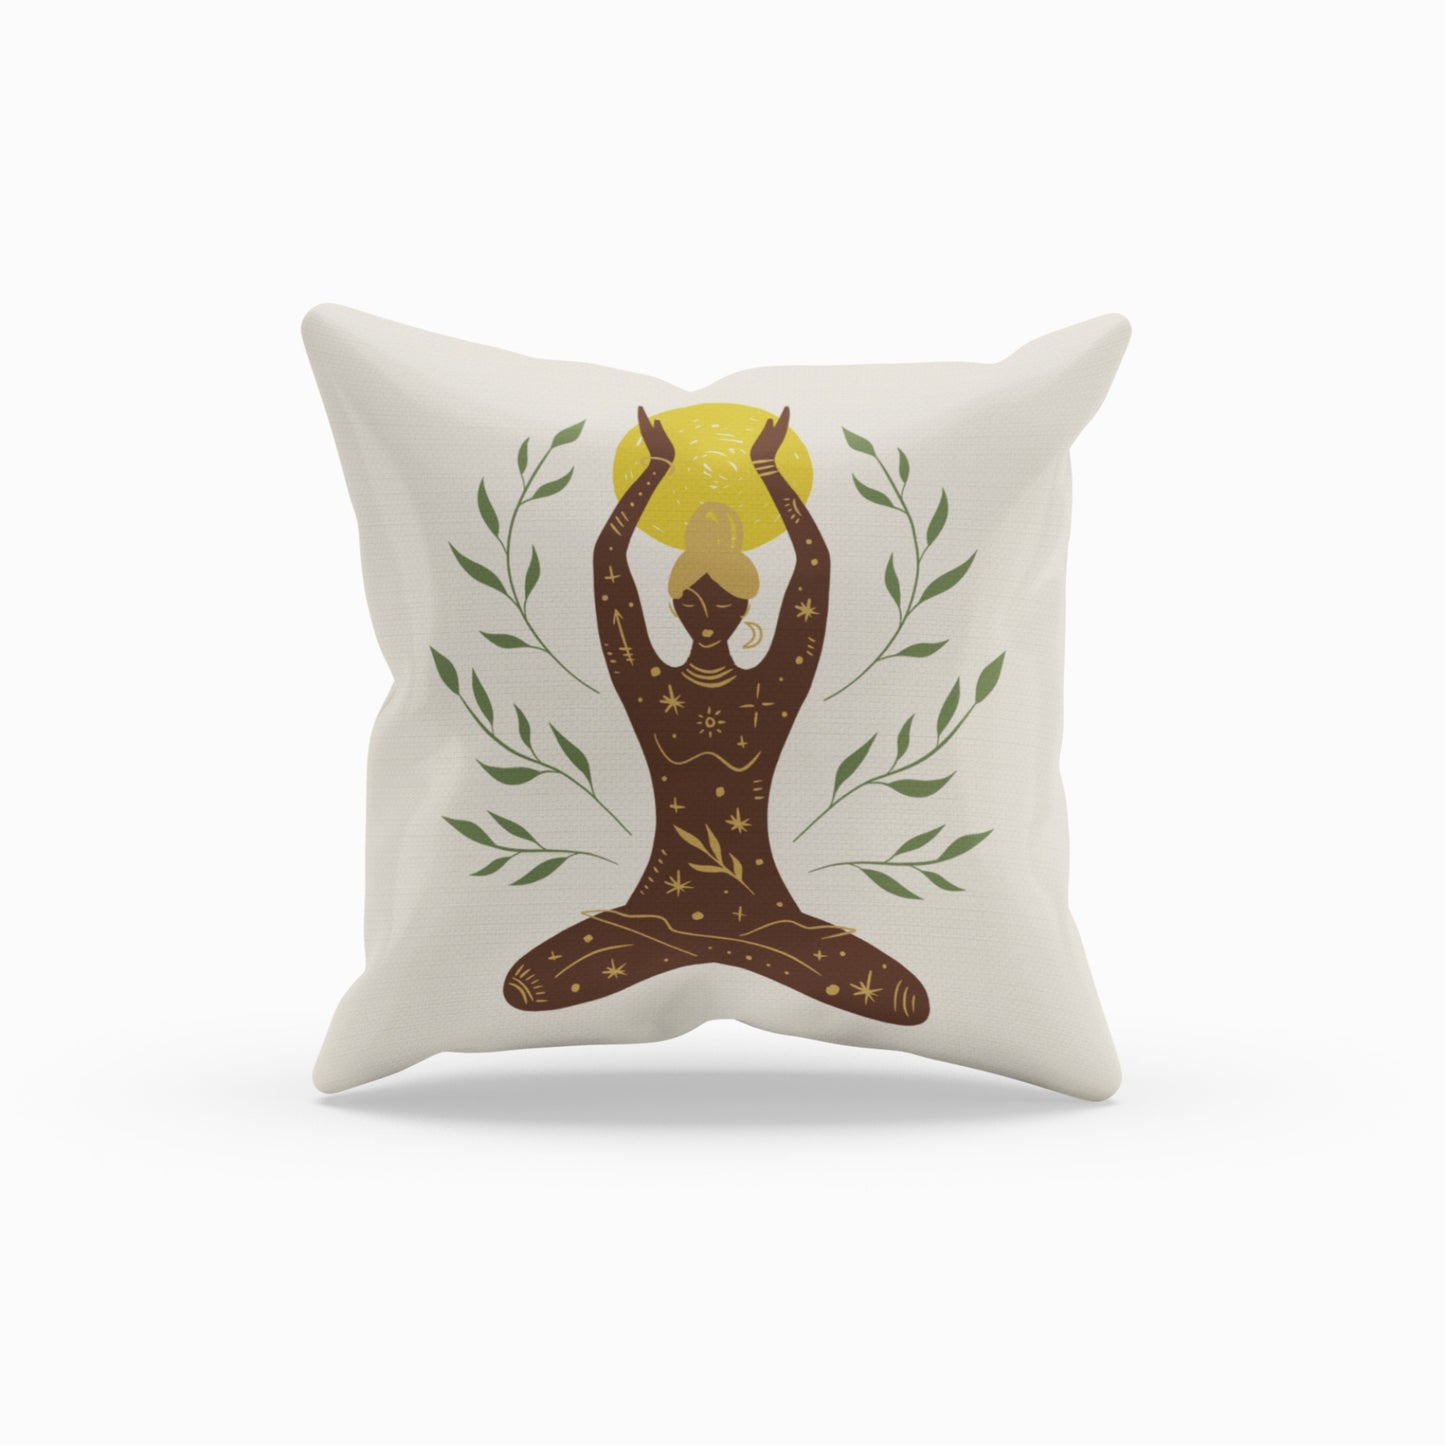 Homeezone's Zen Yoga Theme Pillow